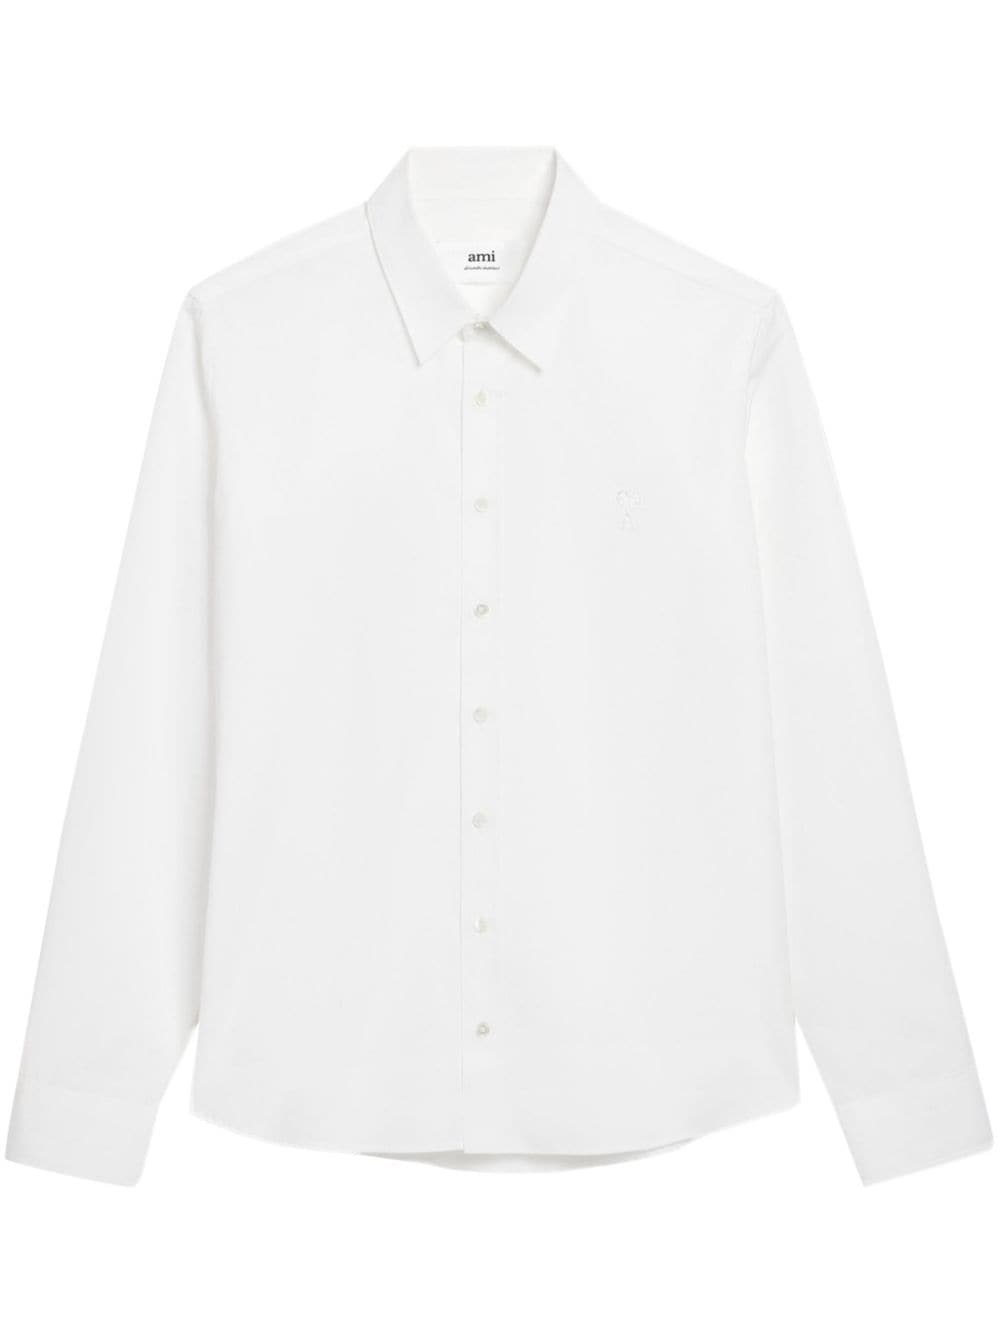 AMI Paris logo-embroidered cotton shirt - White von AMI Paris